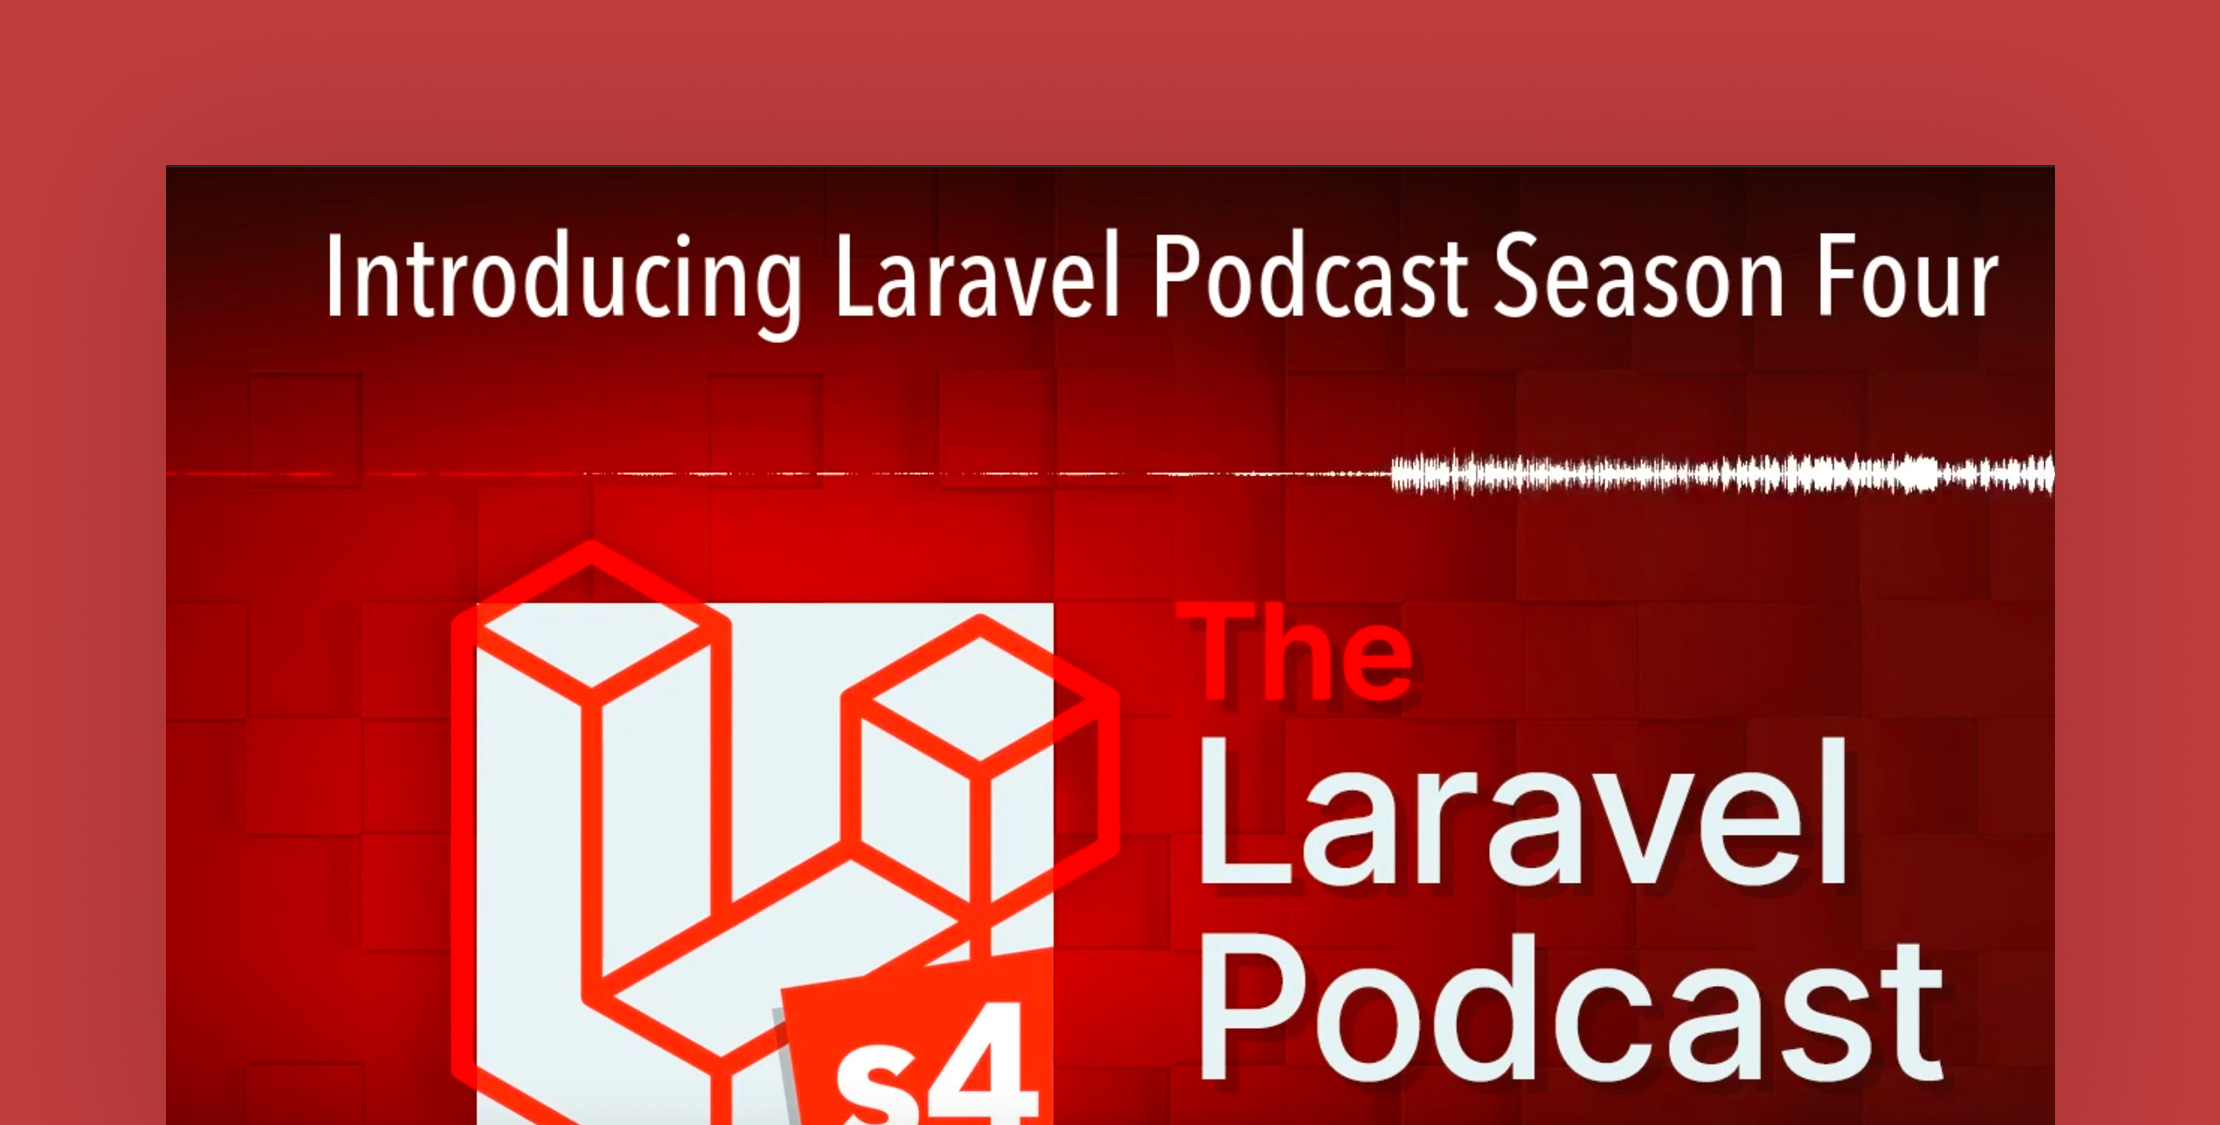 Laravel Podcast Season Four is now on Youtube image